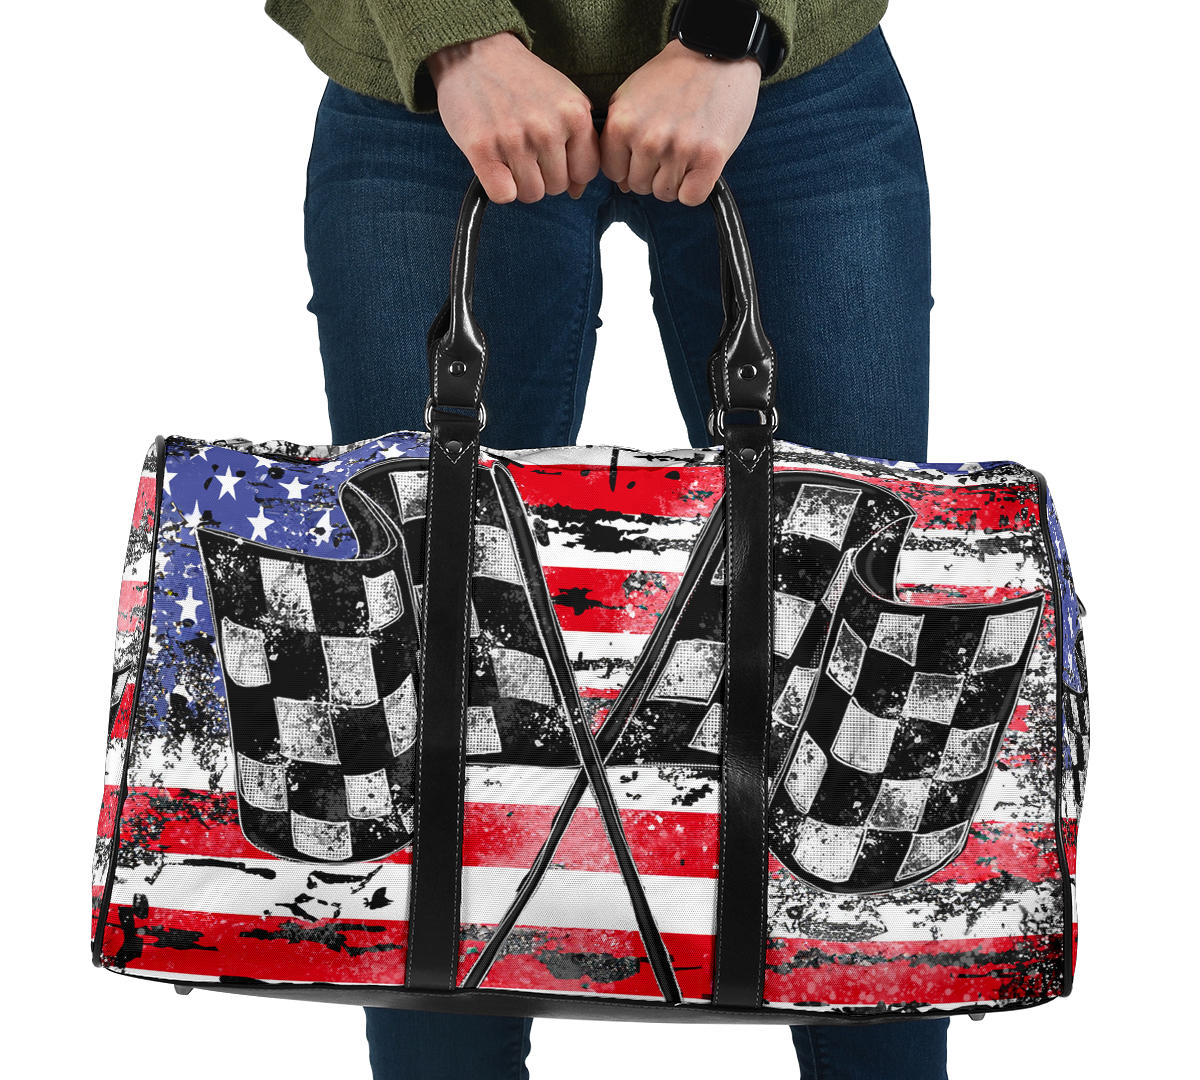 USA Racing Travel Bag